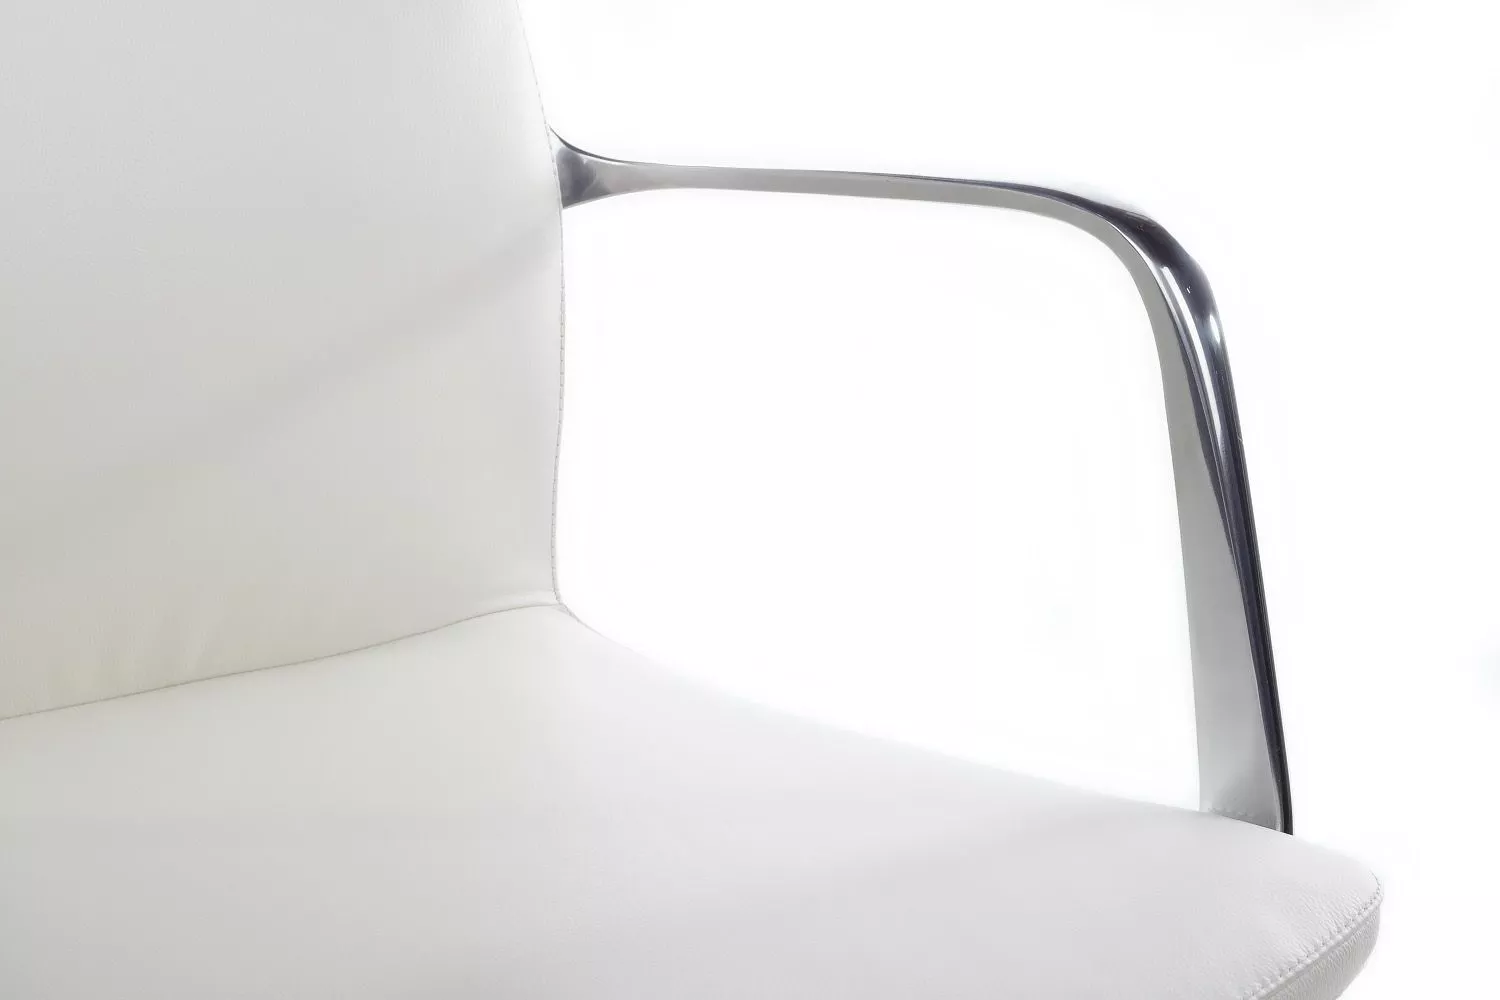 Кресло RIVA DESIGN Plaza-SF (FK004-С11) белый